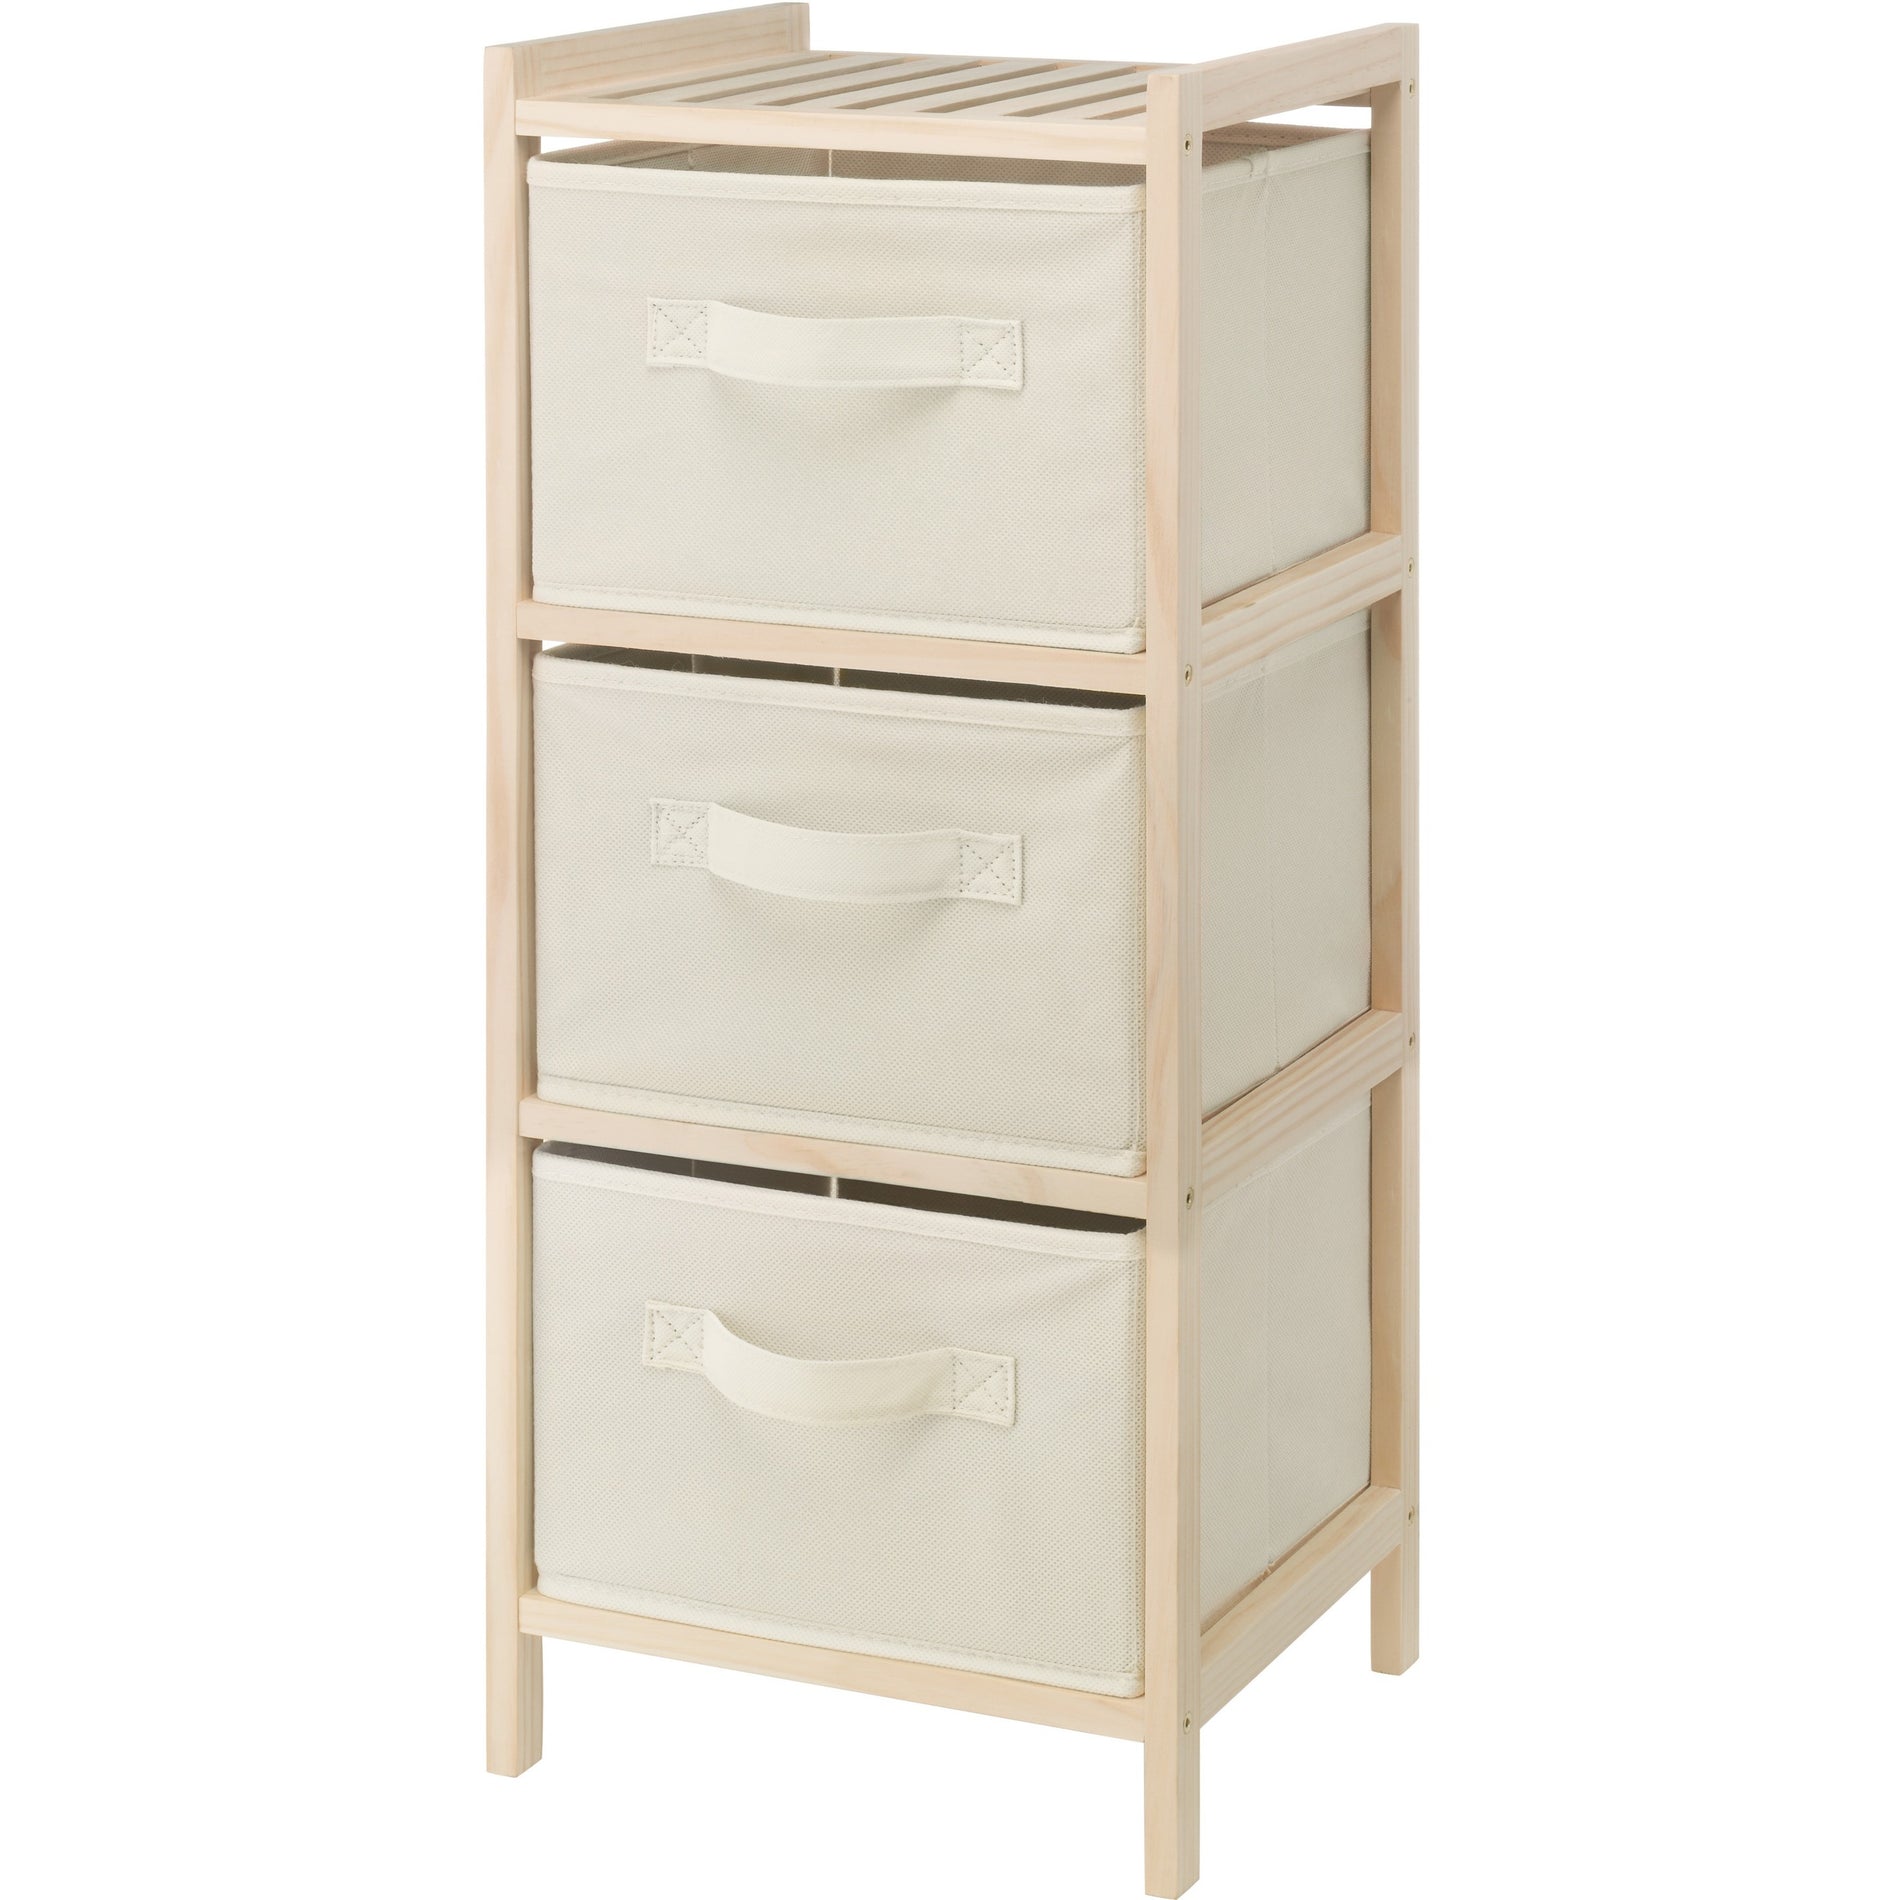 Whitmor 6026-7228 Storage Cabinet - 3-Drawer, Lightweight, Home Organization